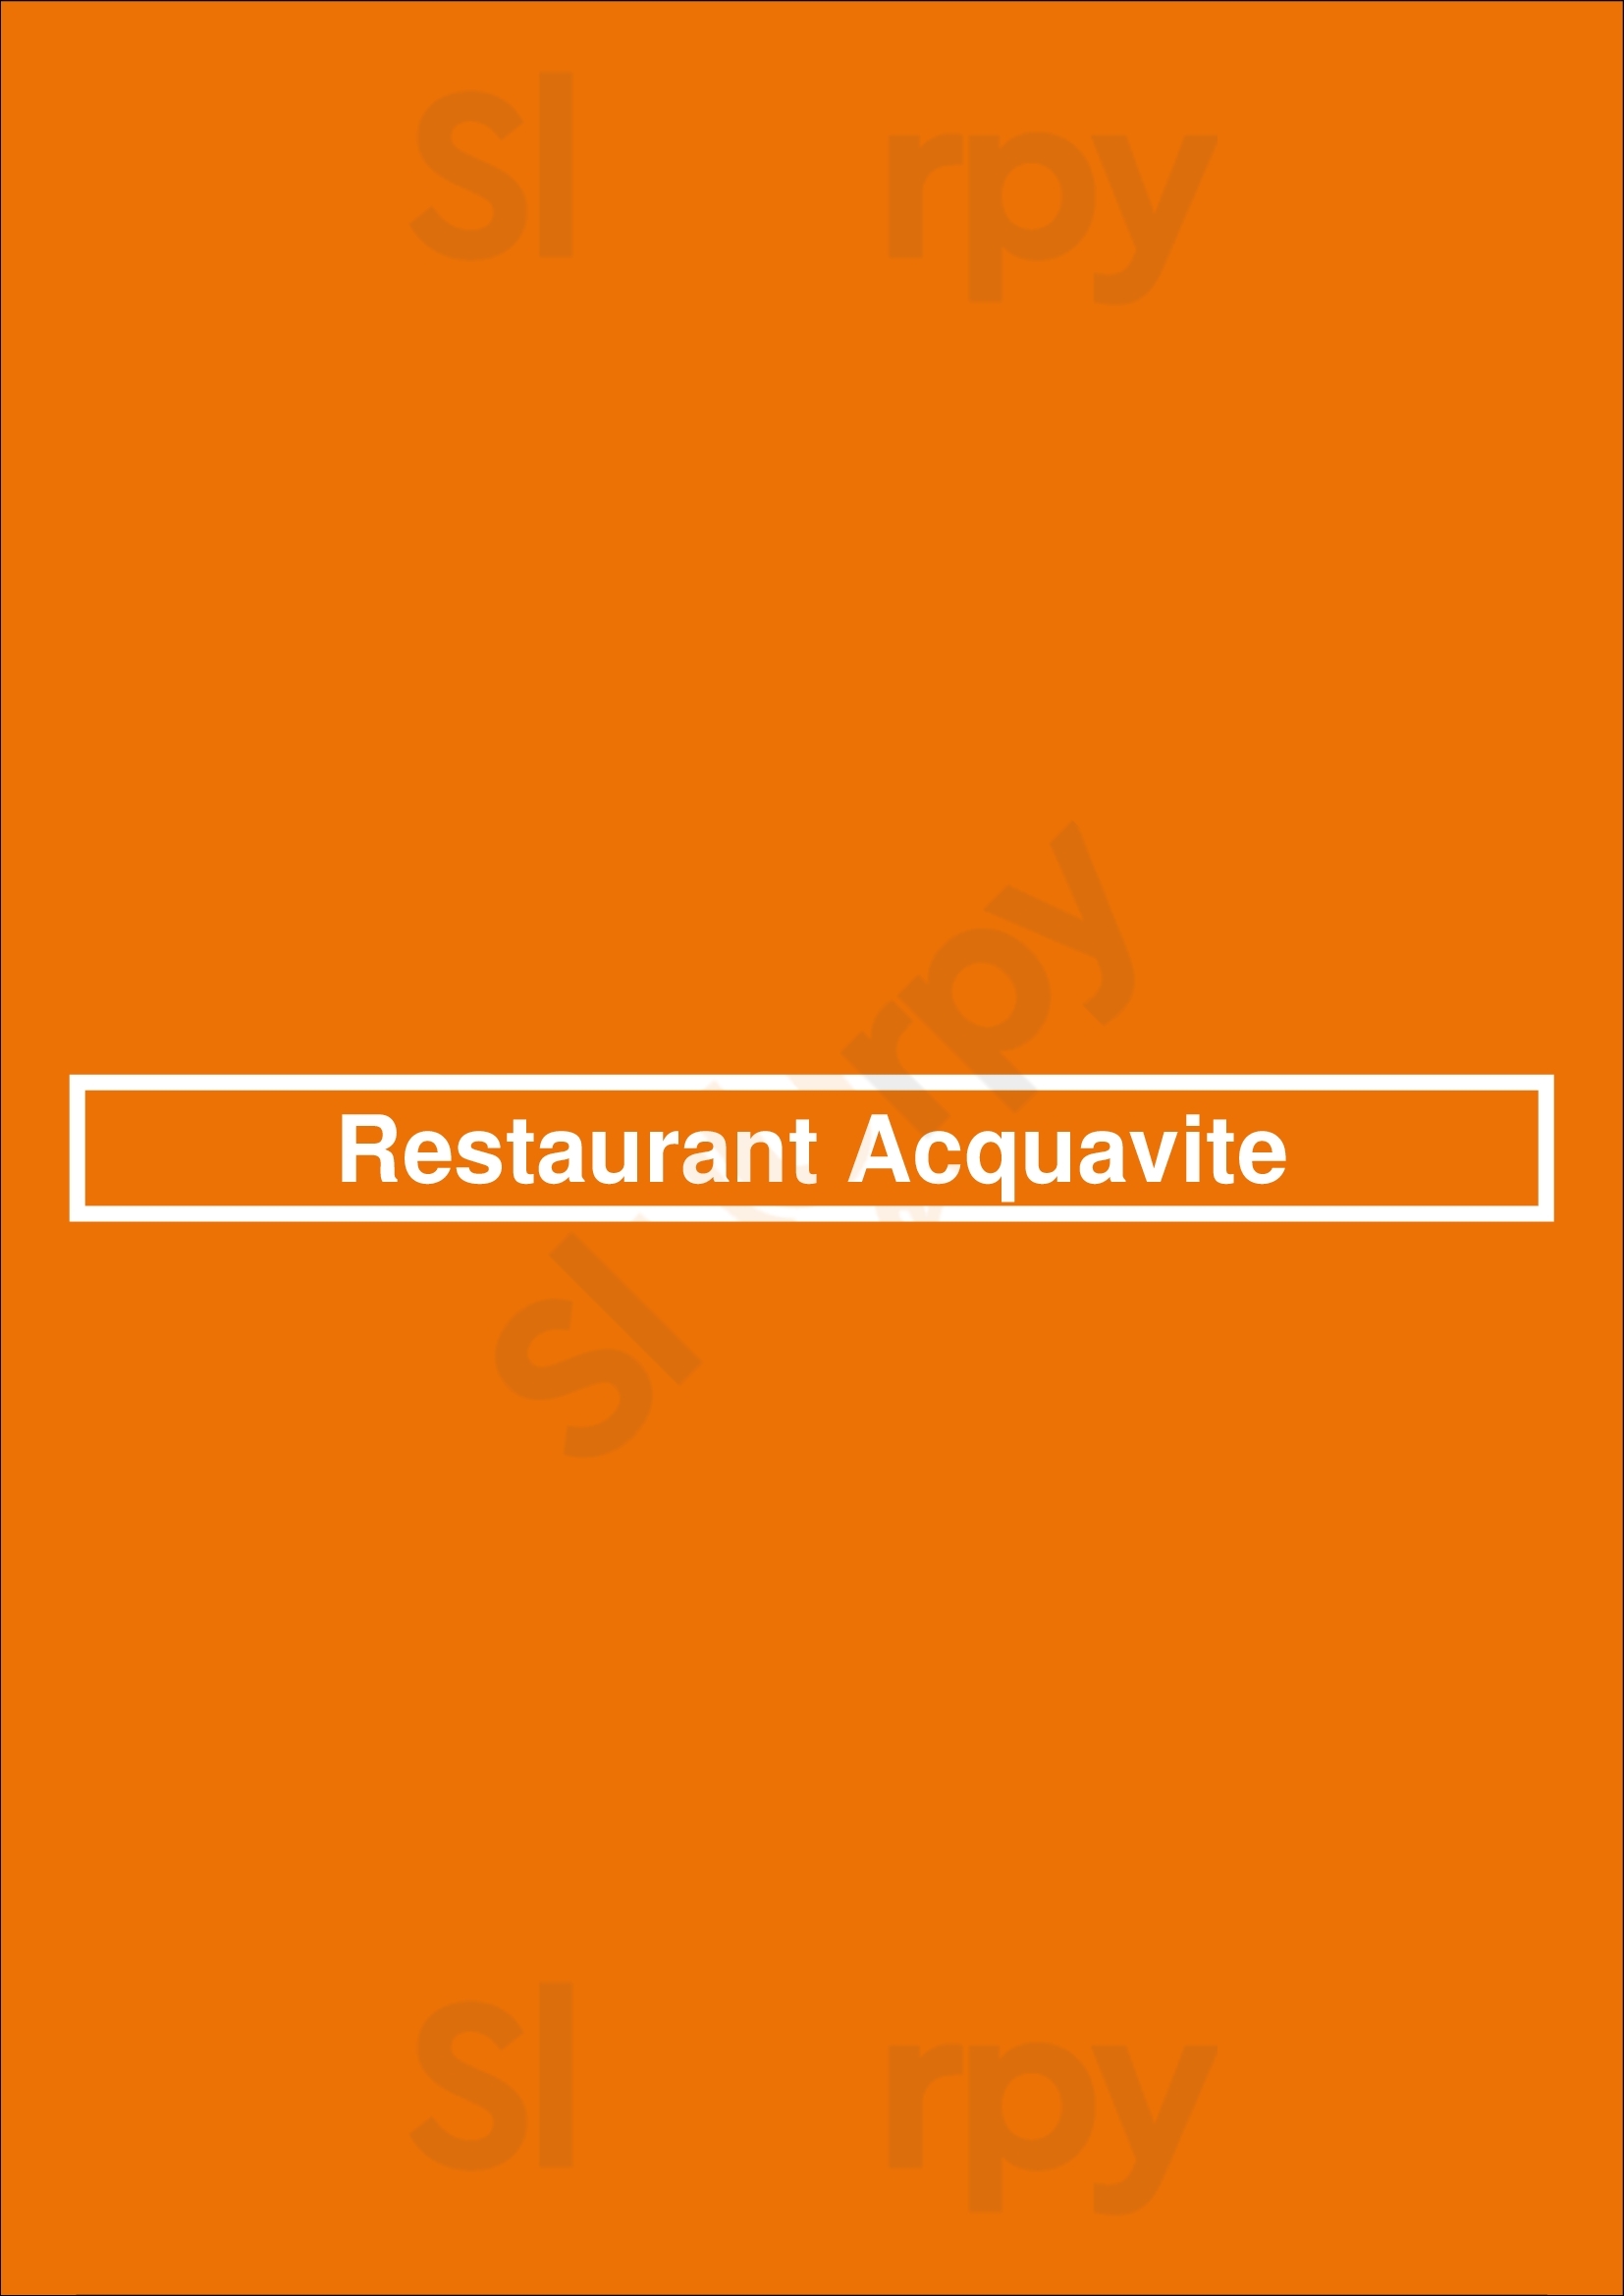 Restaurant Acquavite Naarden Menu - 1